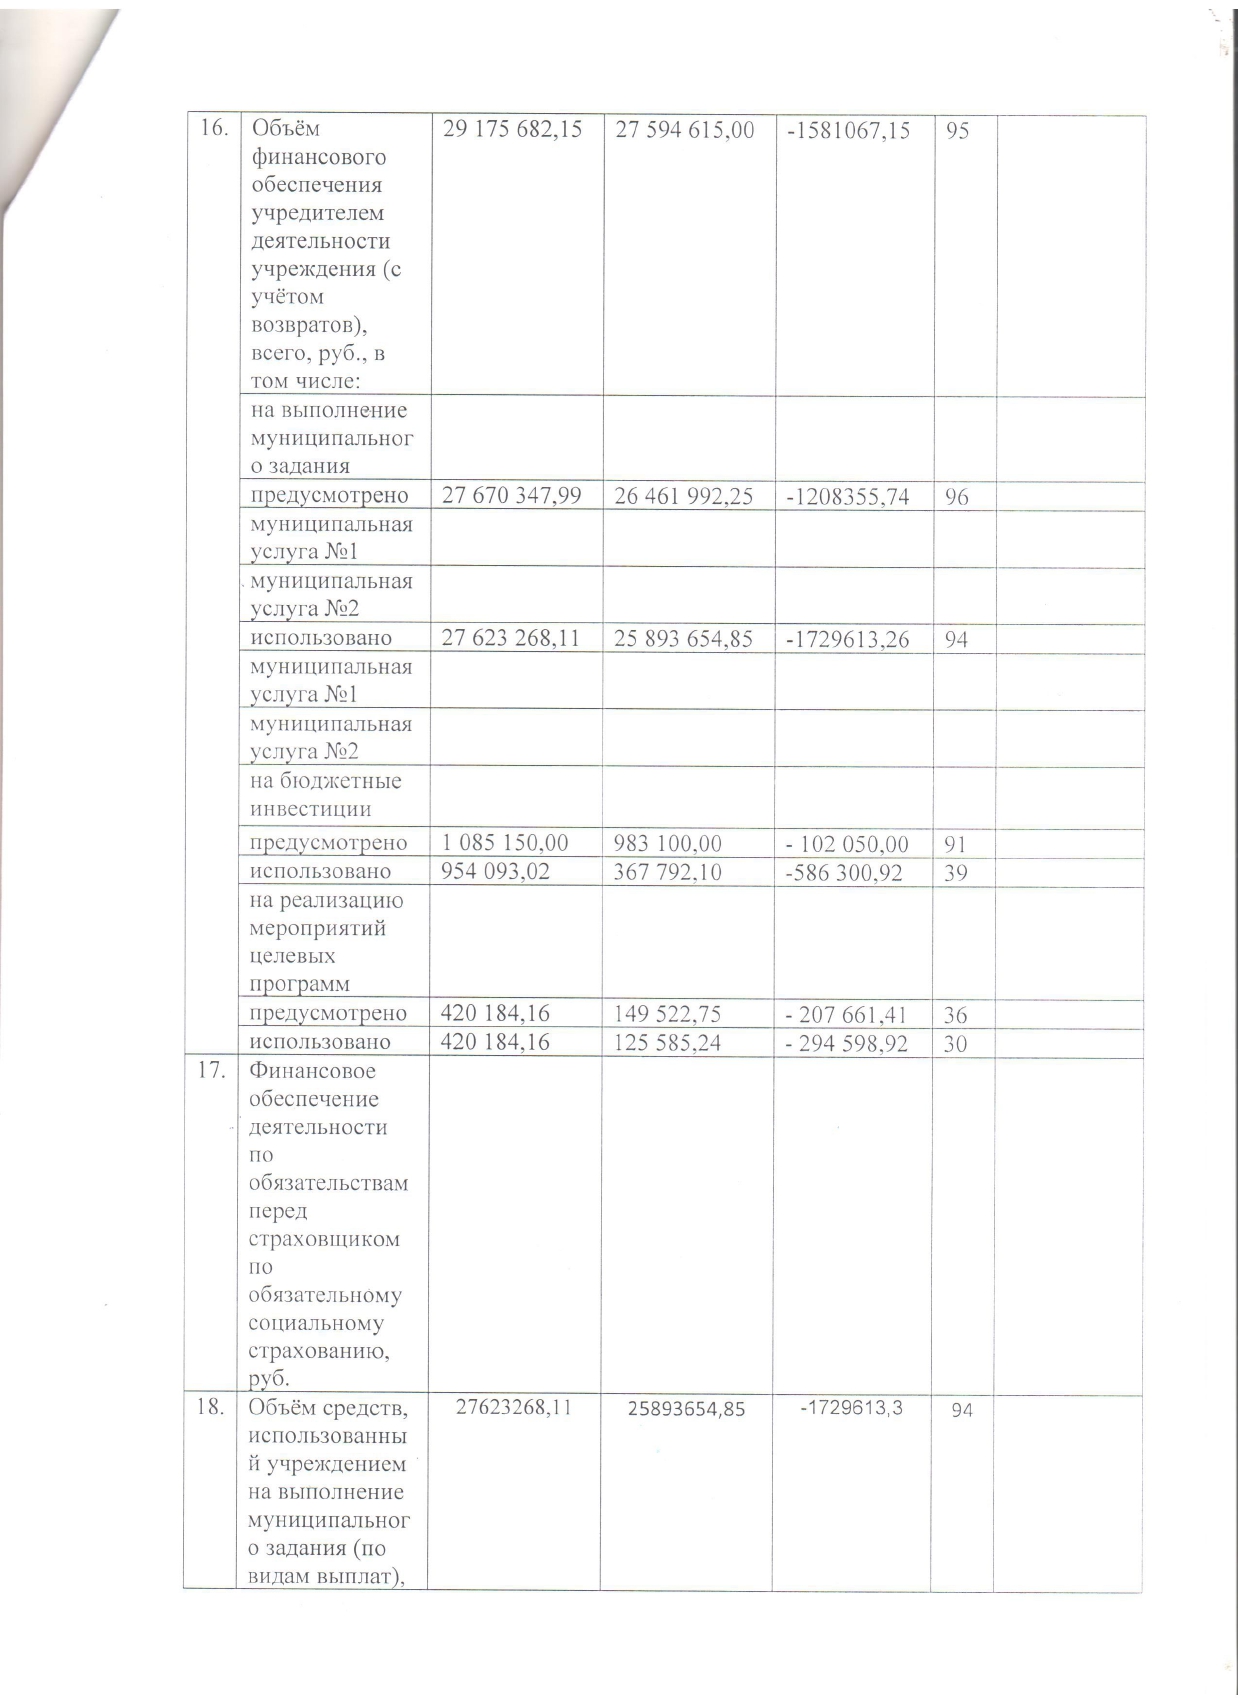 Форма отчетности о результатах деятельности_page-0004.jpg